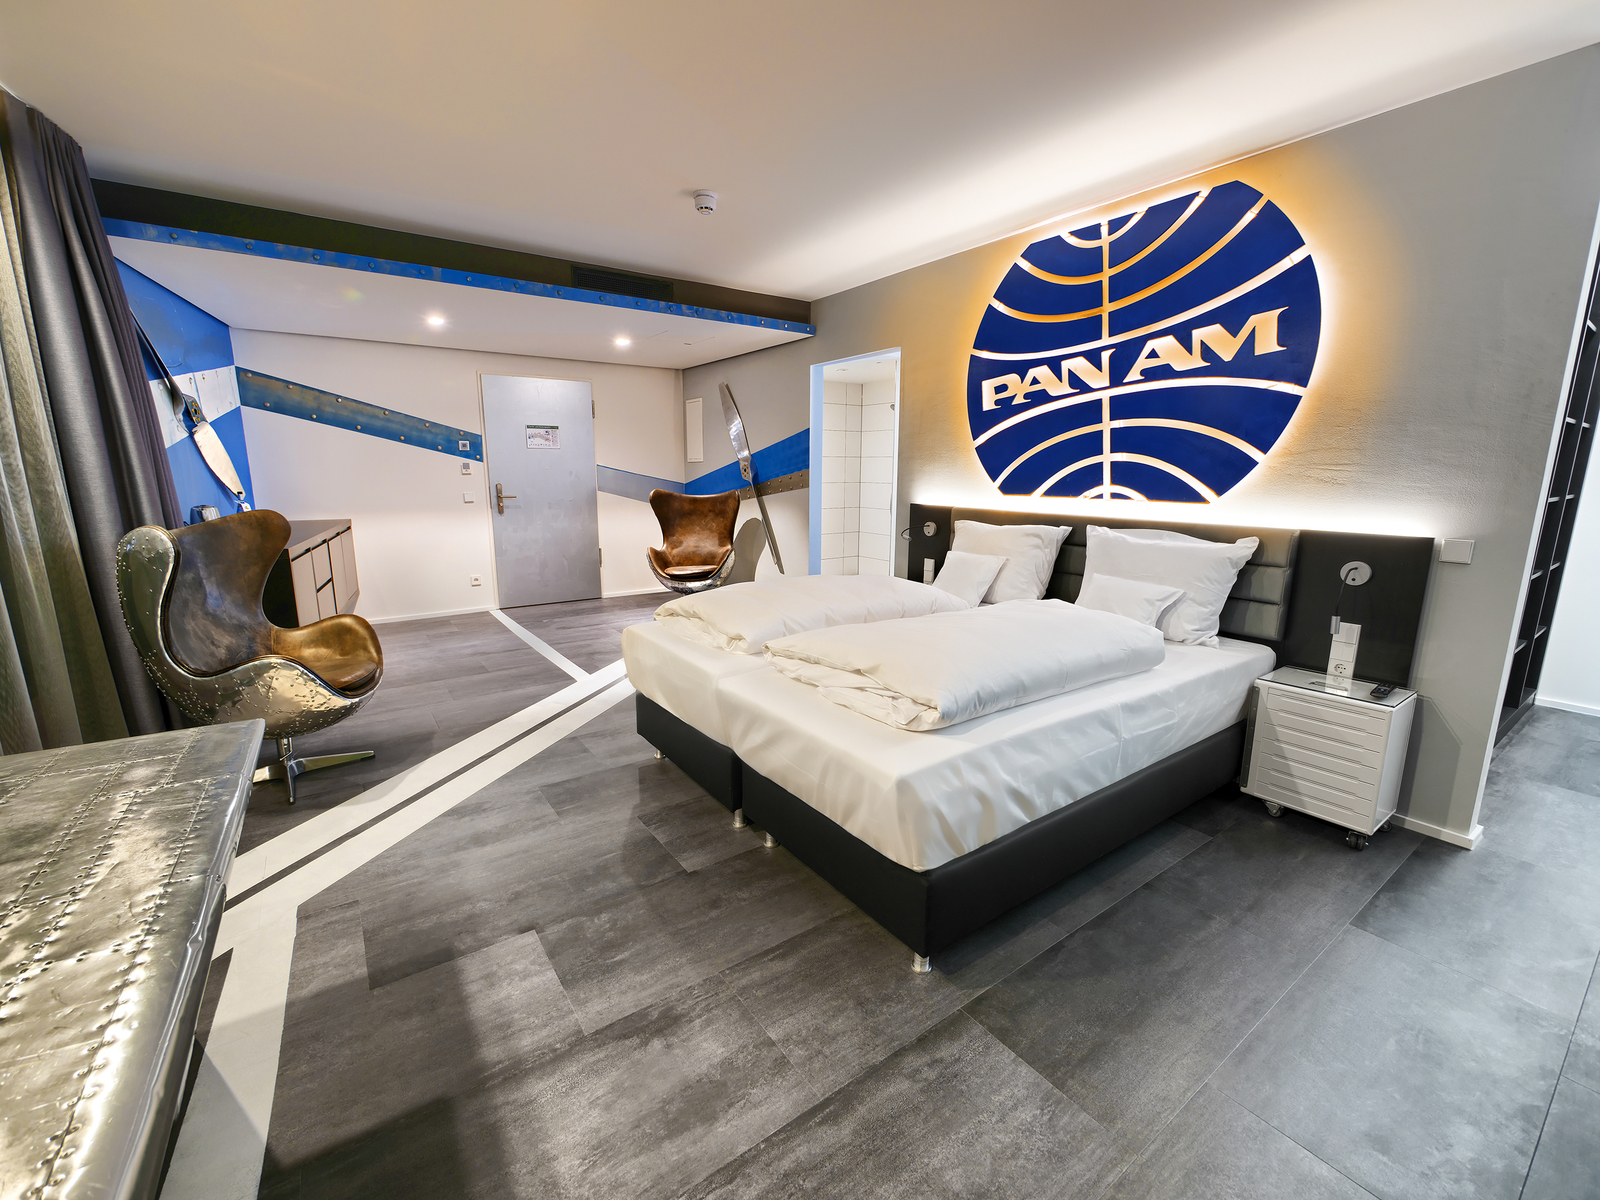 PanAm-Themenzimmer im V8 Hotel mit einem blauen Logo über dem gemütlichem Doppelbett gegenüber eines  Ledersessels